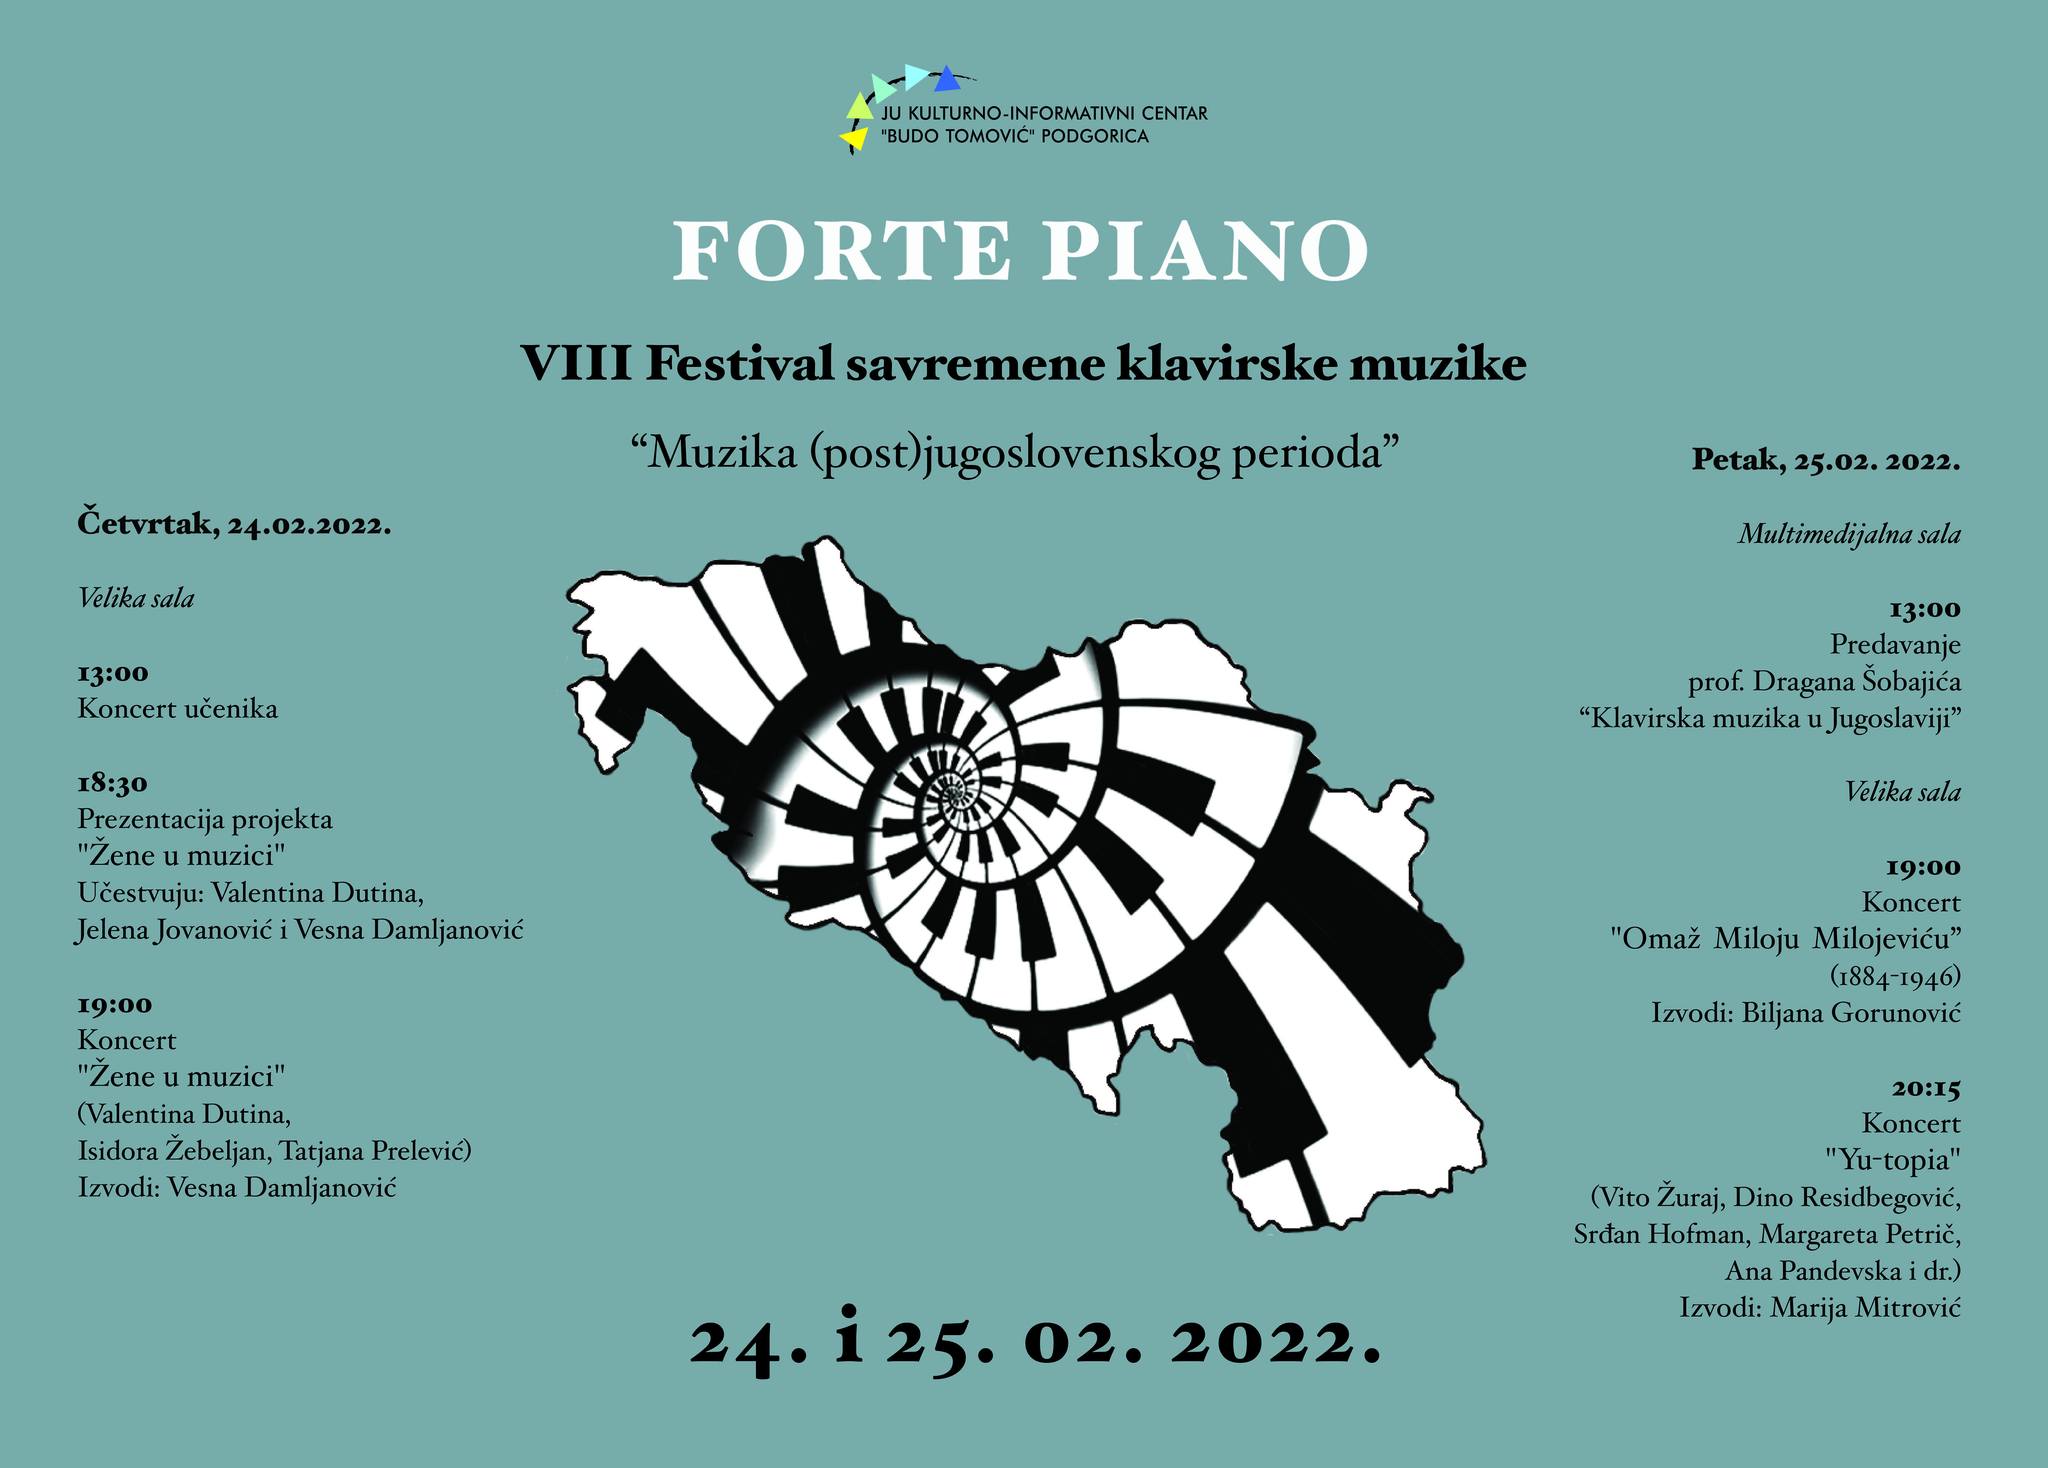 U KIC-u “Budo Tomović” počinje osmi festival savremene klavirske muzike “Forte piano”